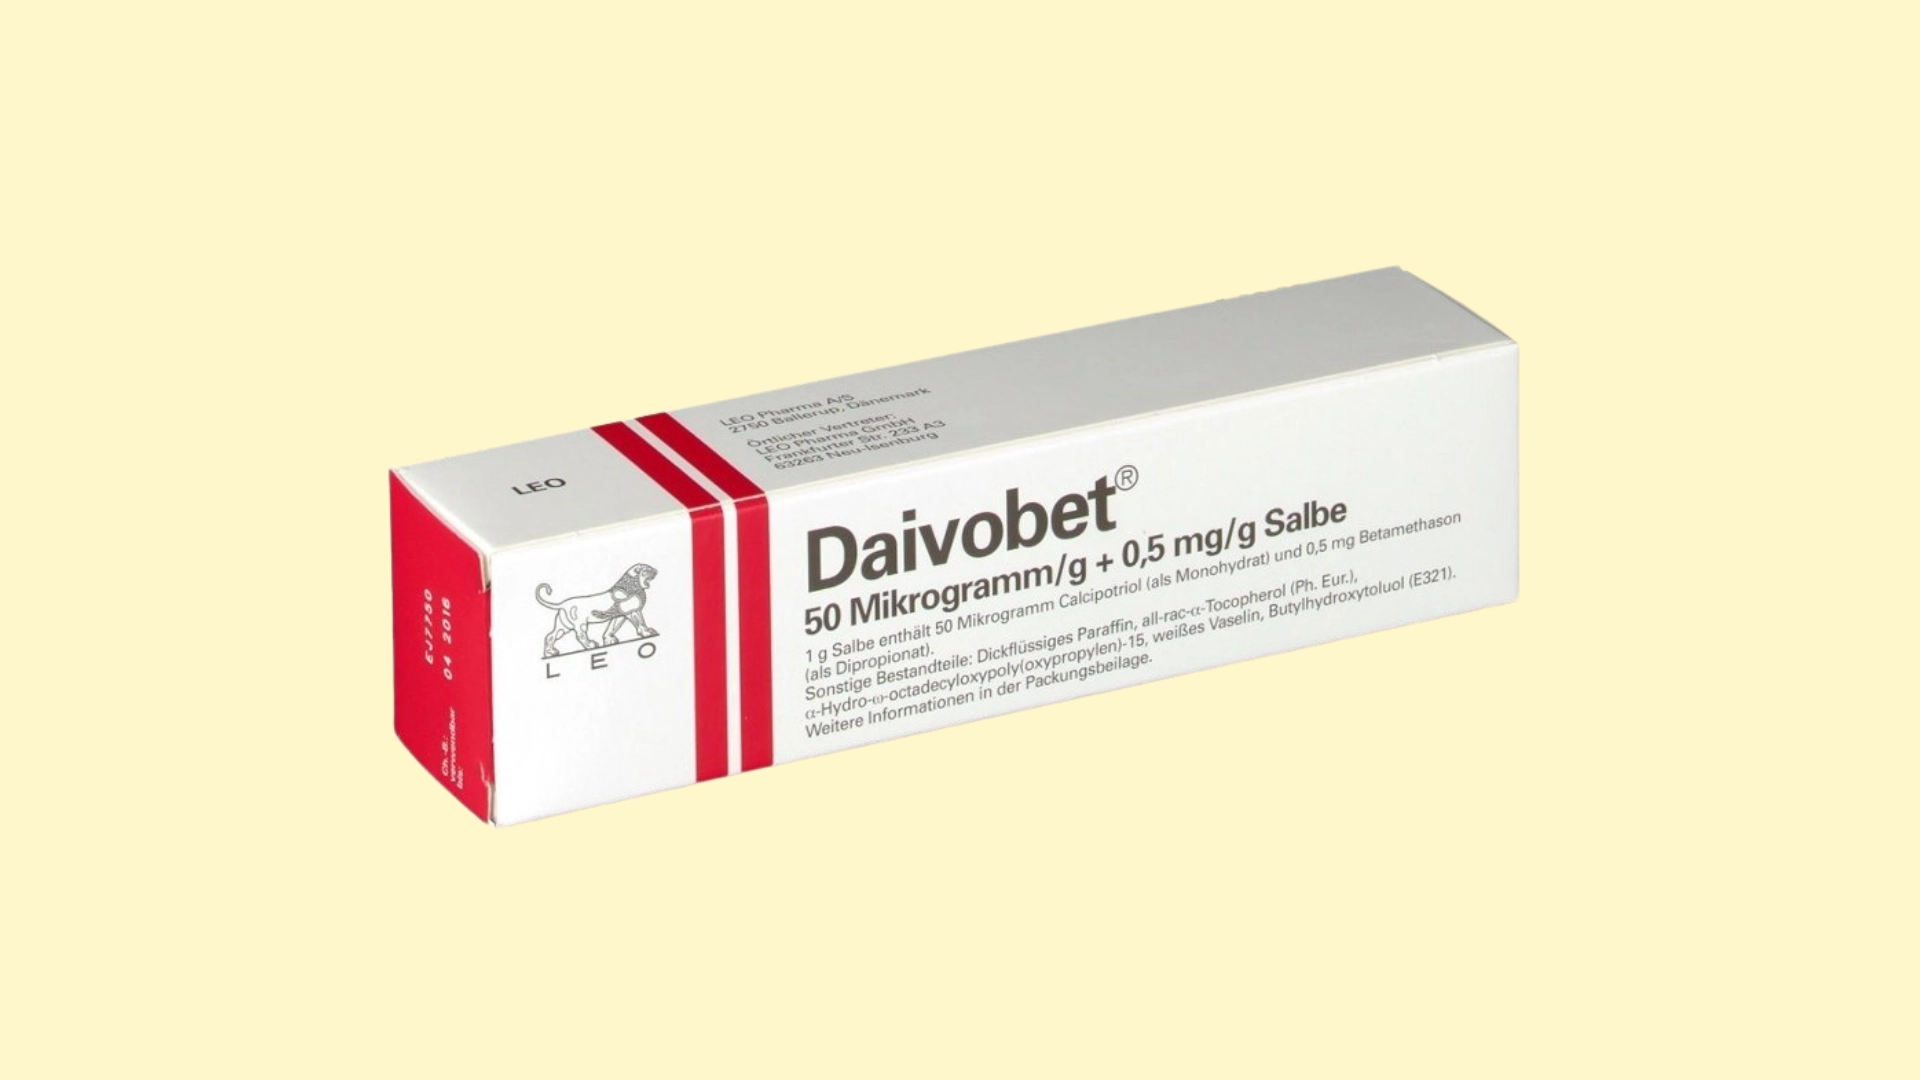 Daivobet E recepta  recepta online z konsultacją | cena  dawkowanie  przeciwwskazania